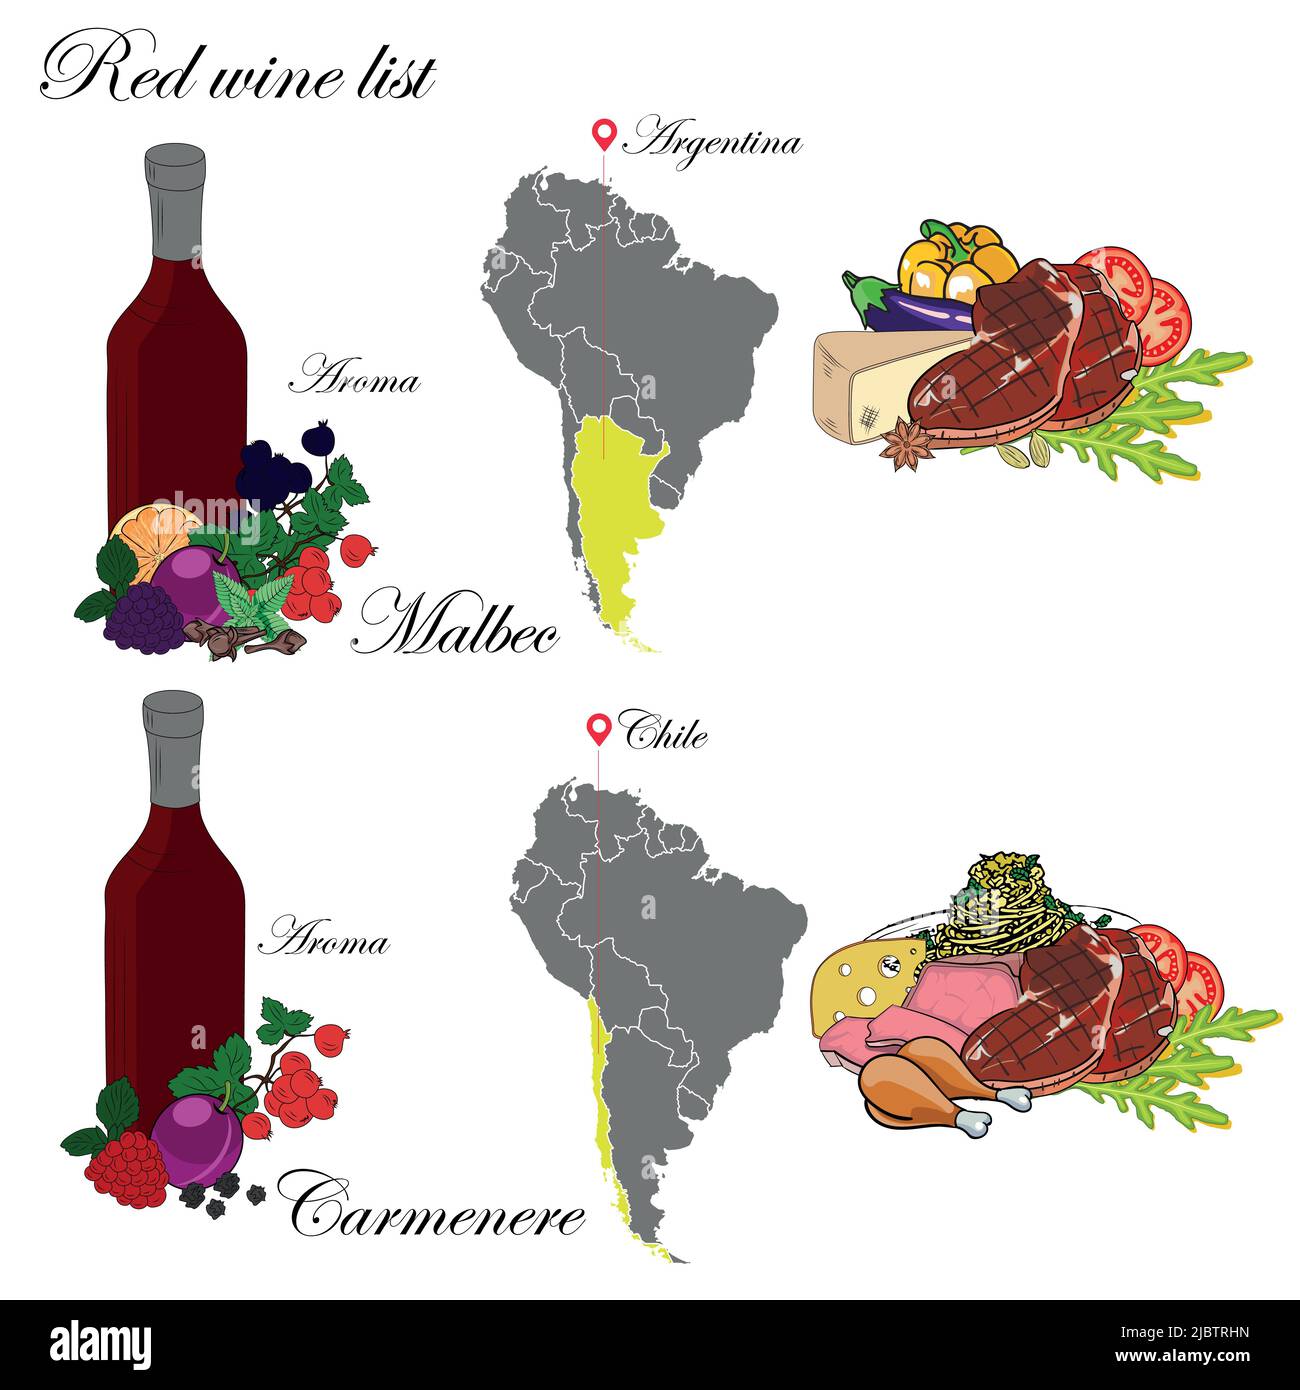 Malbec et Carmenere. La carte des vins. Une illustration d'un vin rouge avec un exemple d'arômes, une carte du vignoble et une nourriture qui correspond au vin. Illustration de Vecteur